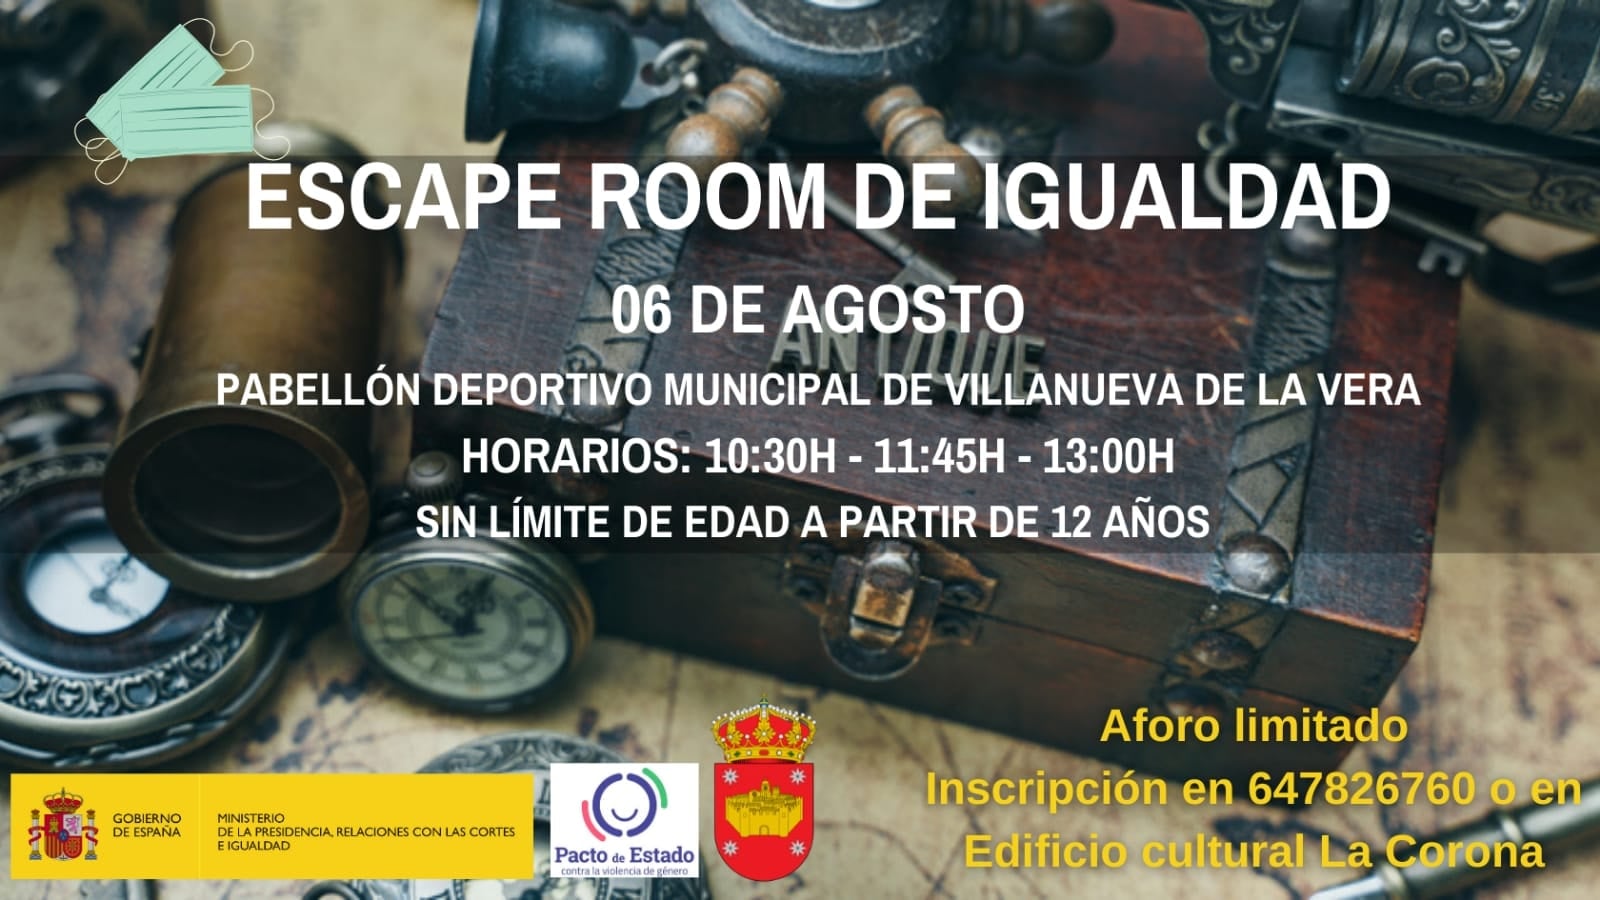 Escape room de igualdad 2020 - Villanueva de la Vera (Cáceres)